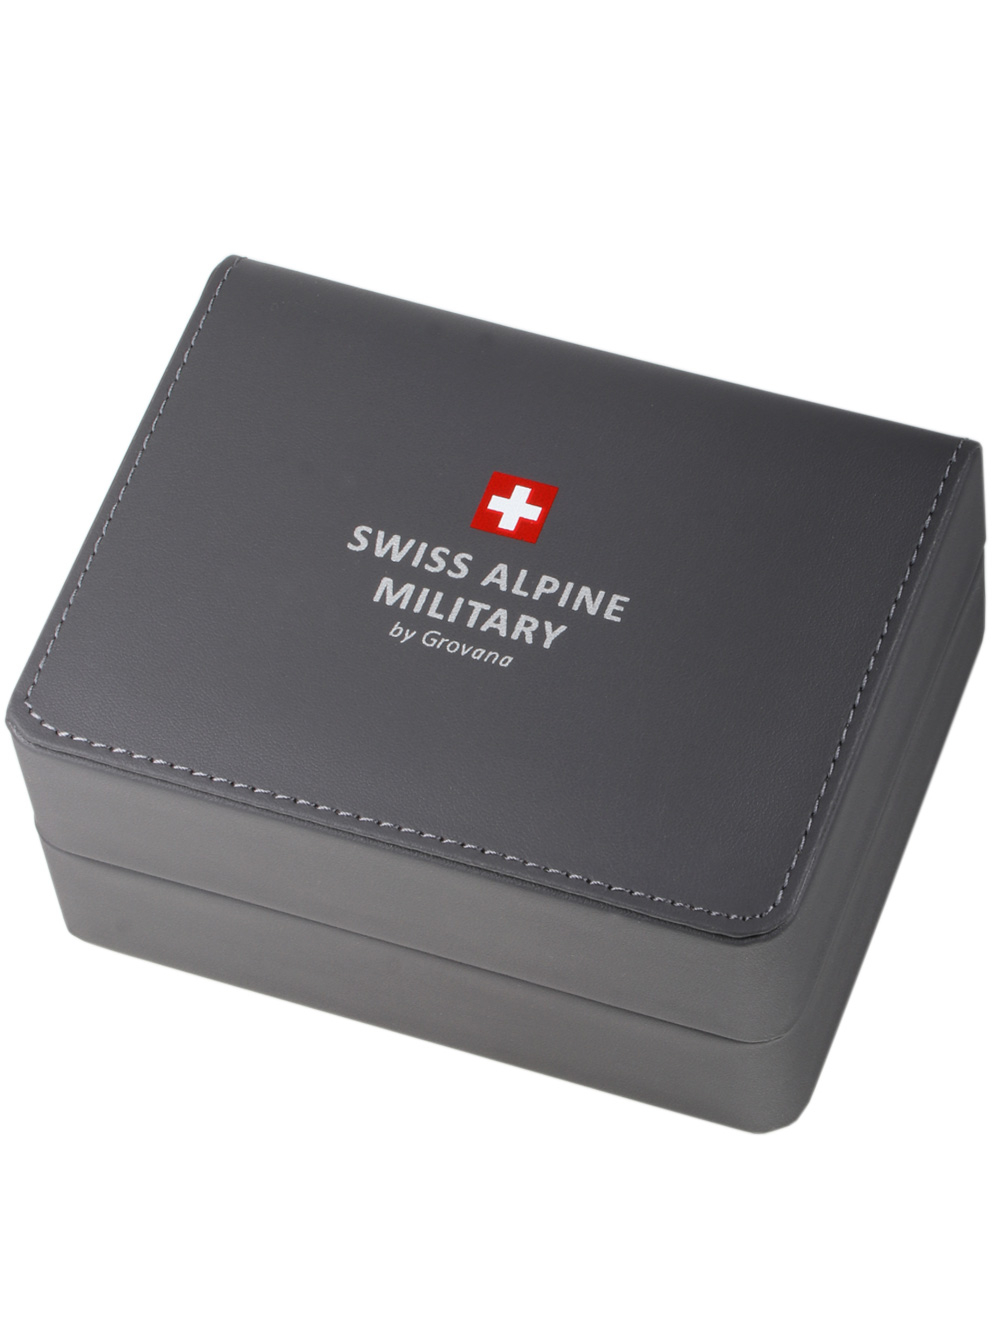 Zegarek męski Swiss Alpine Military 7095.2175